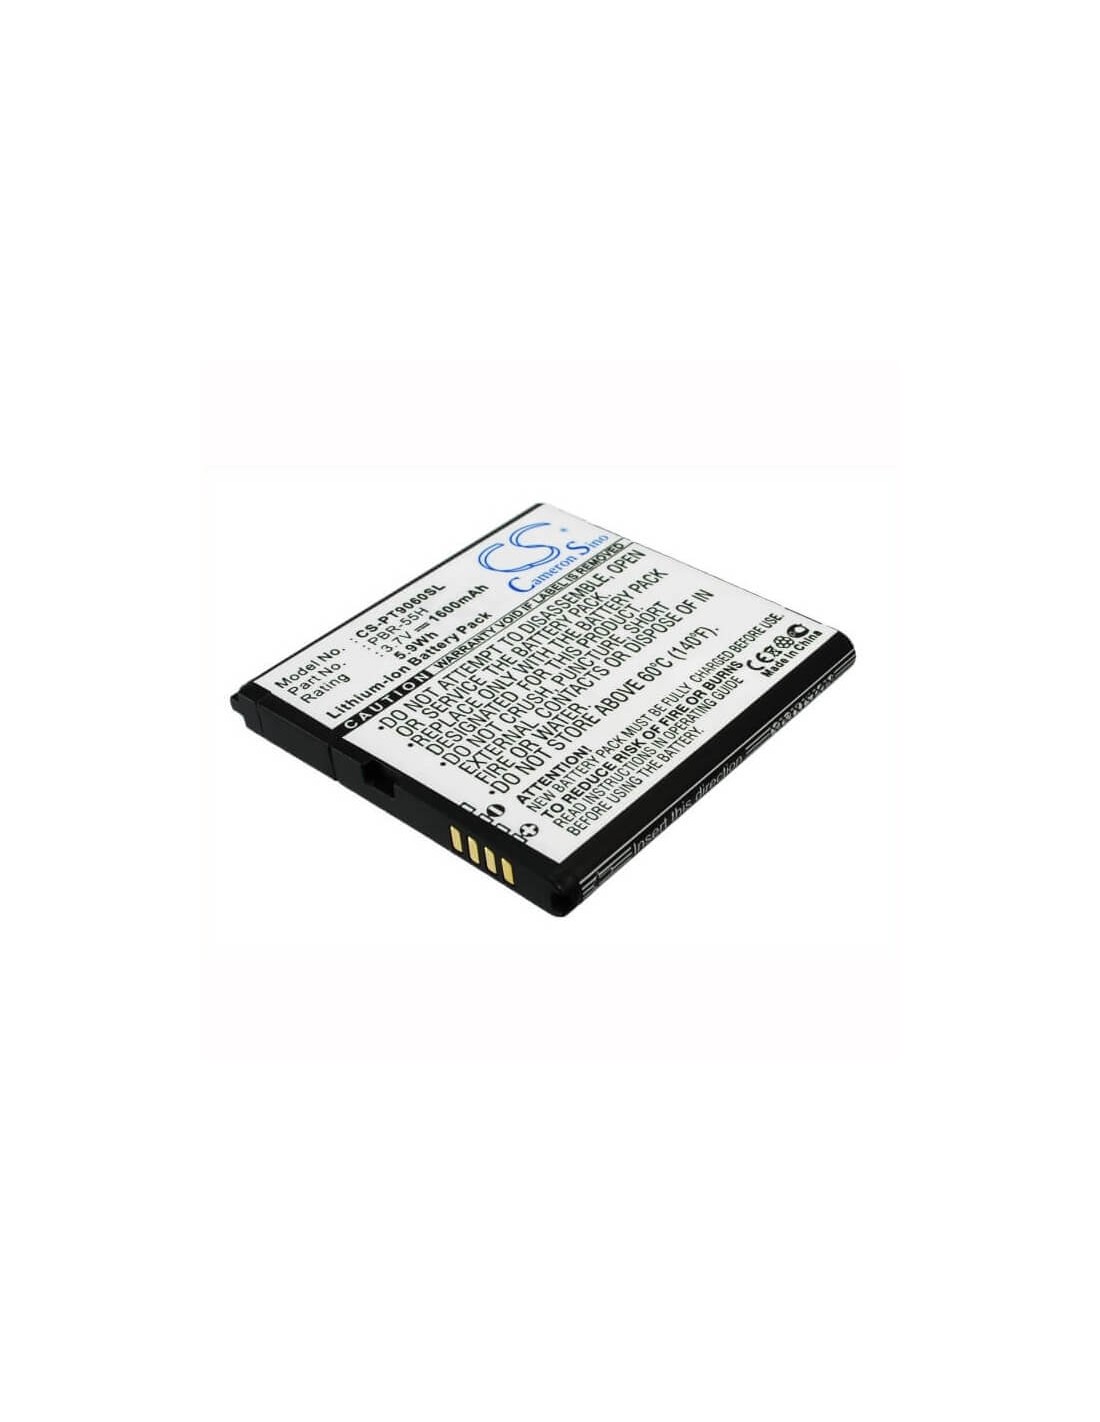 Battery for Pantech P9060, Pocket 3.7V, 1600mAh - 5.92Wh